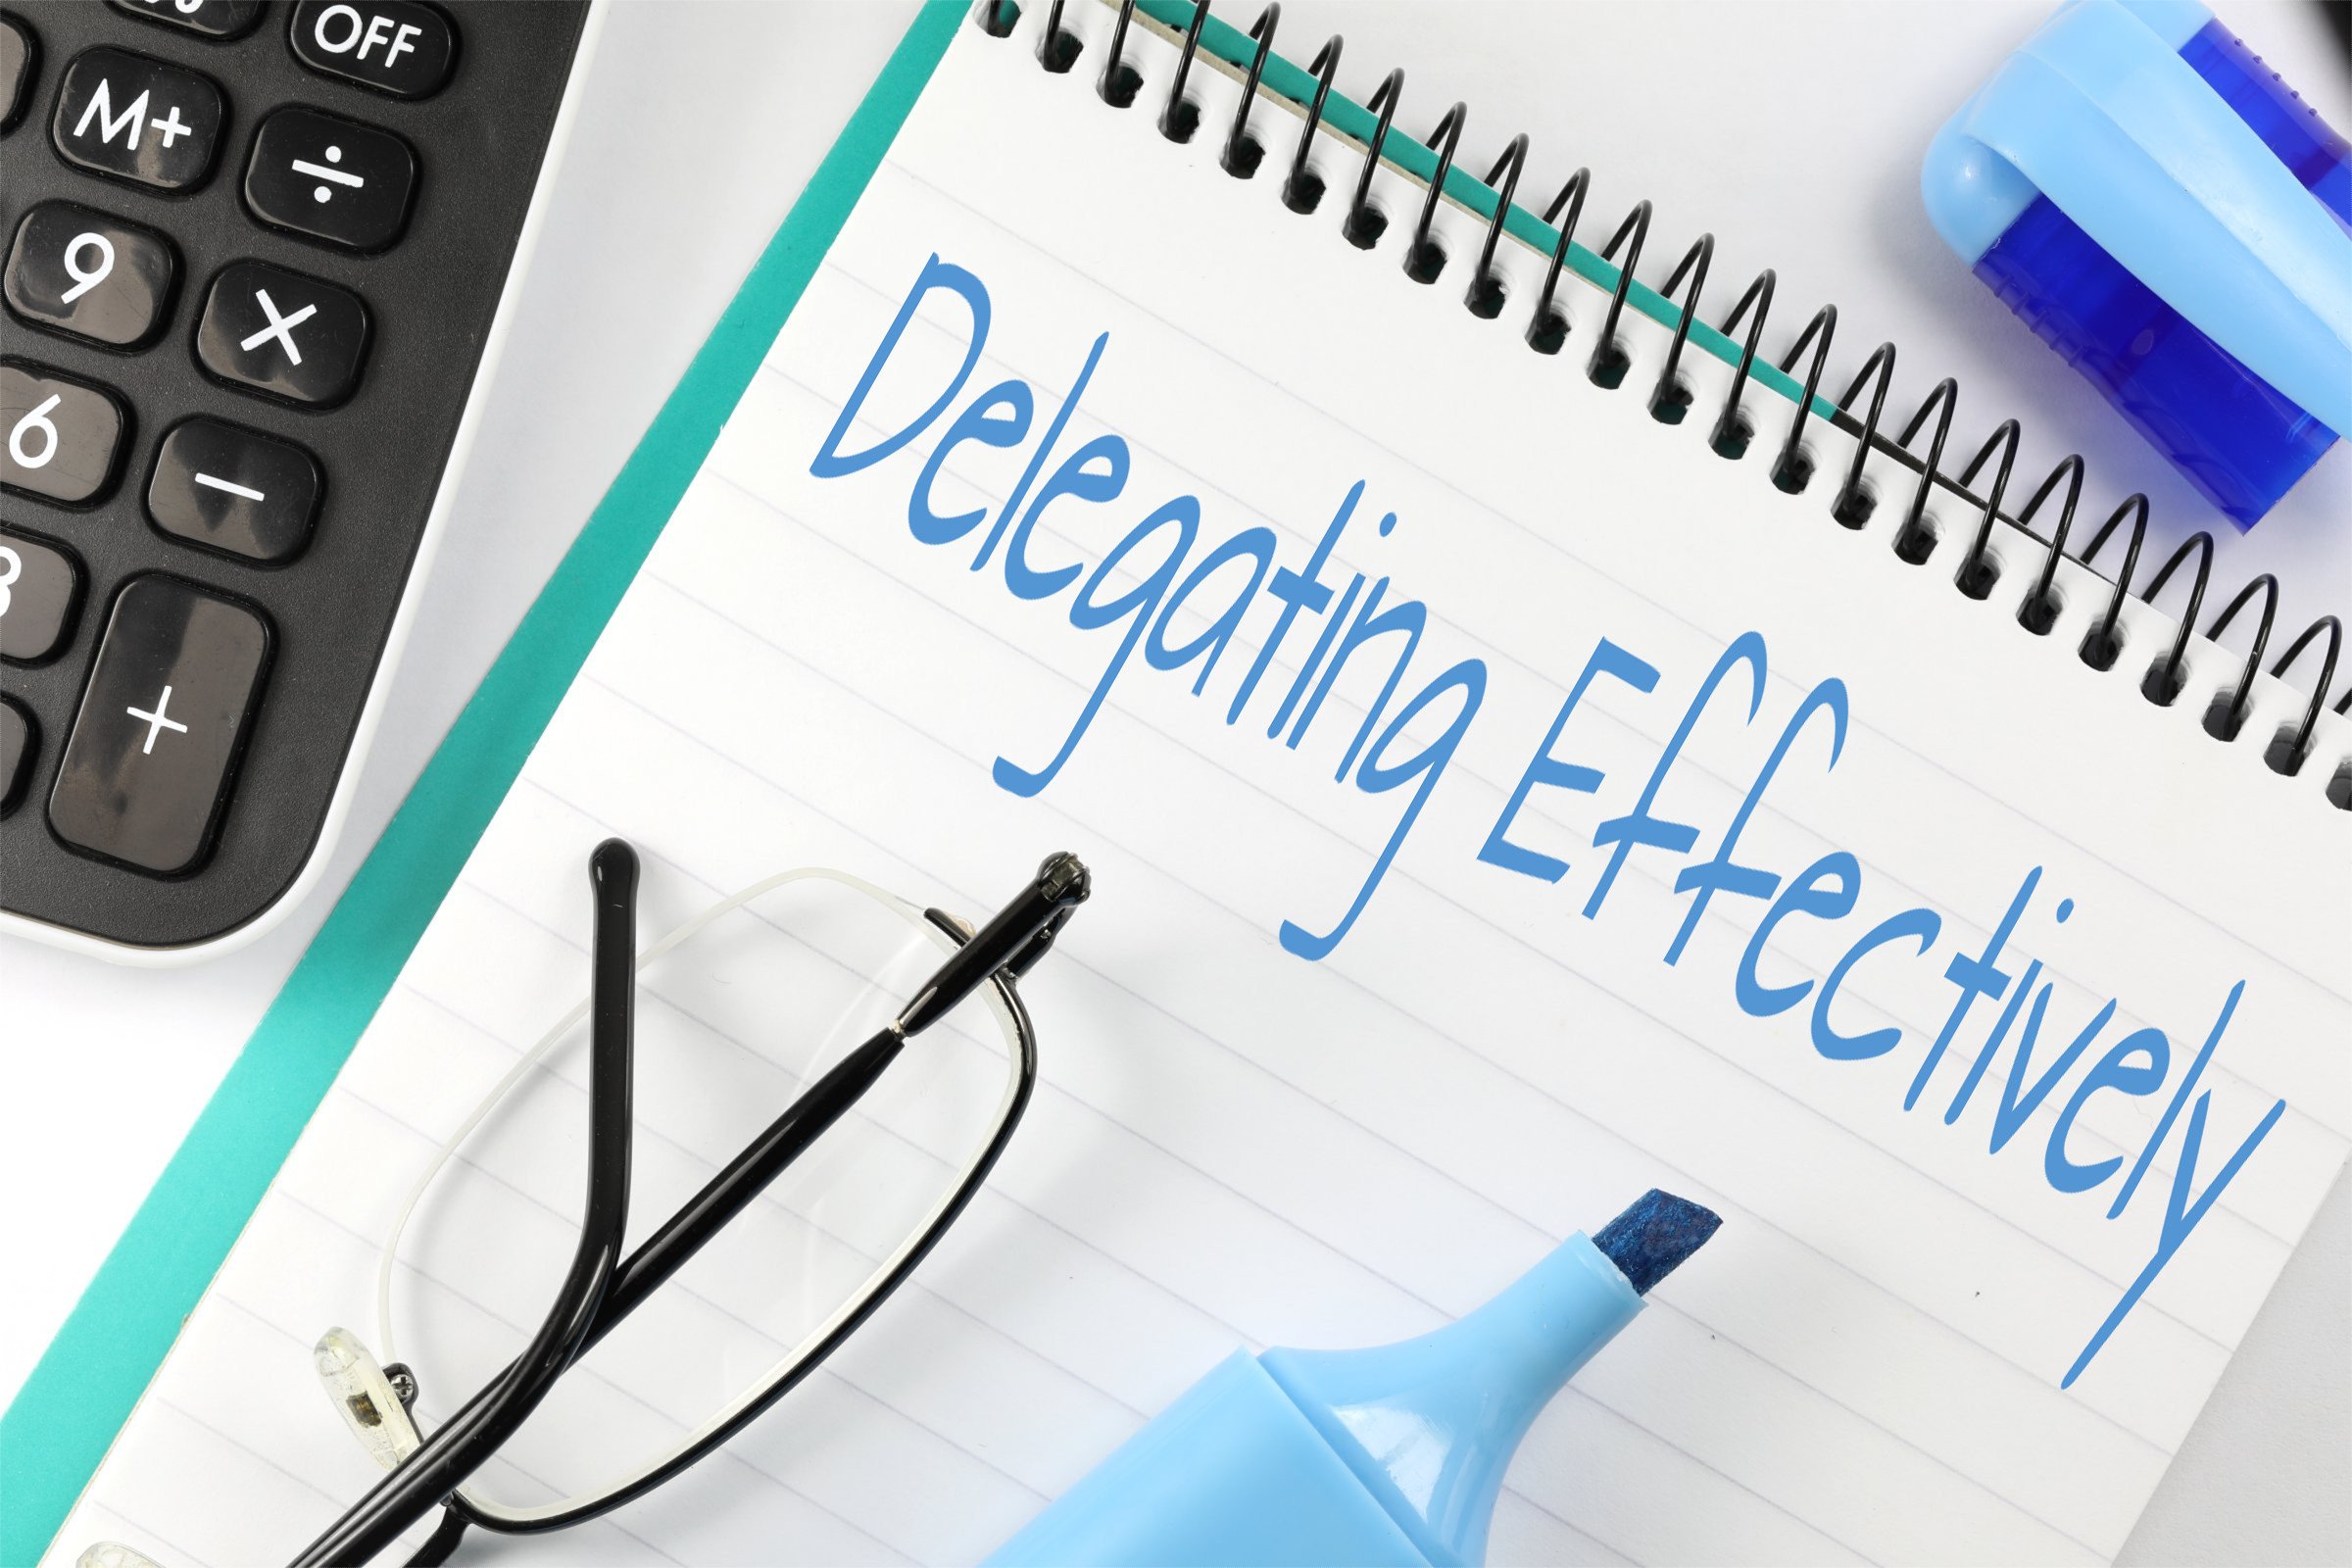 delegating effectively